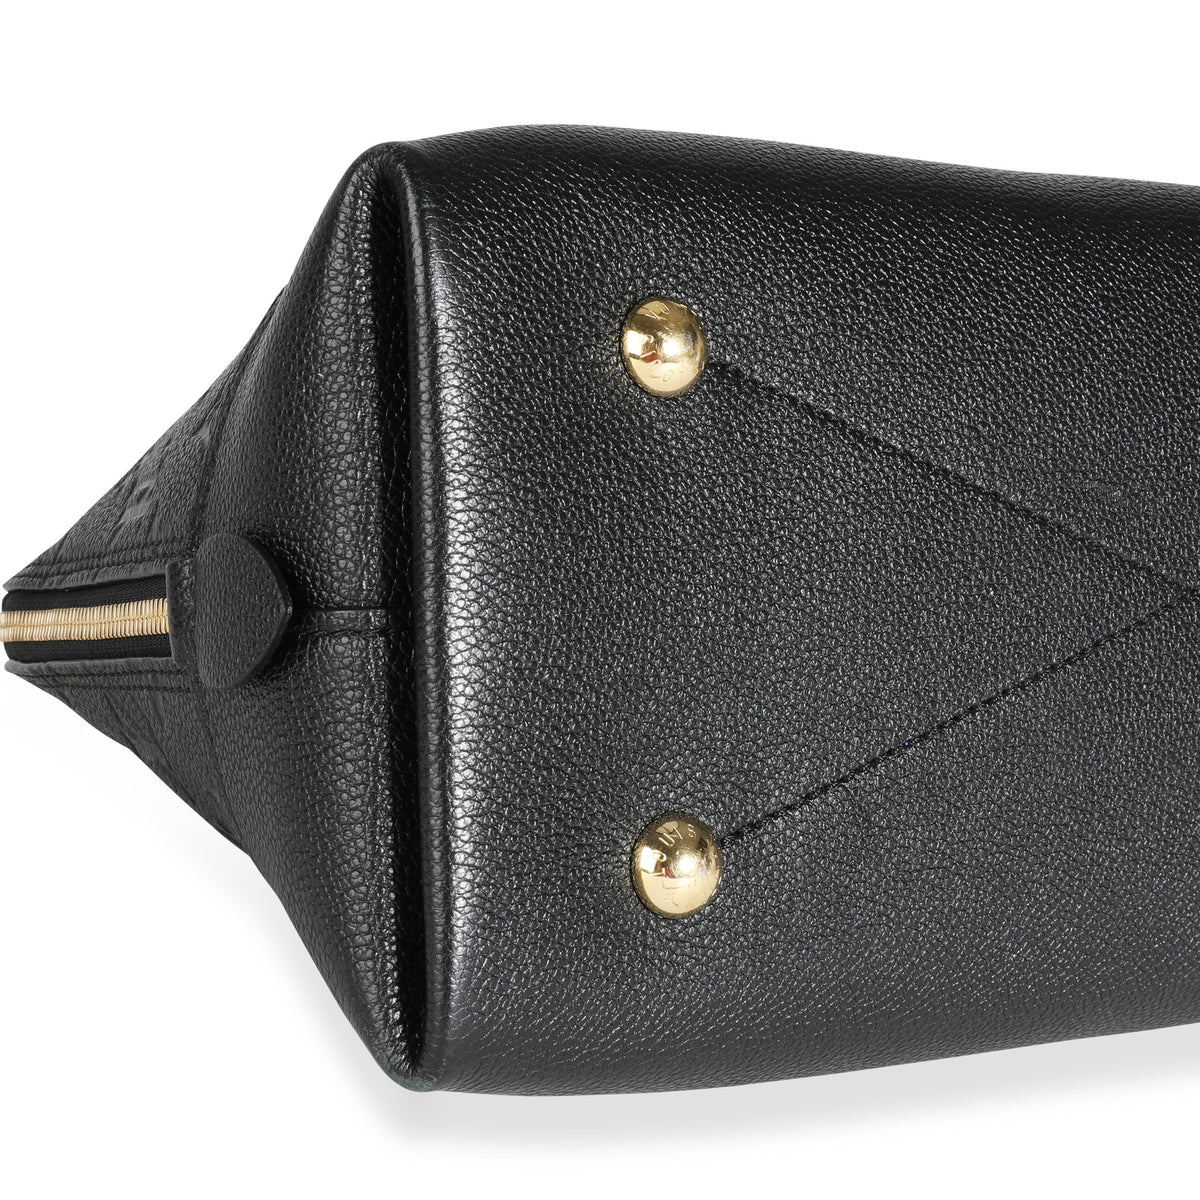 Louis Vuitton Space Bracelet on Black Cord, myGemma